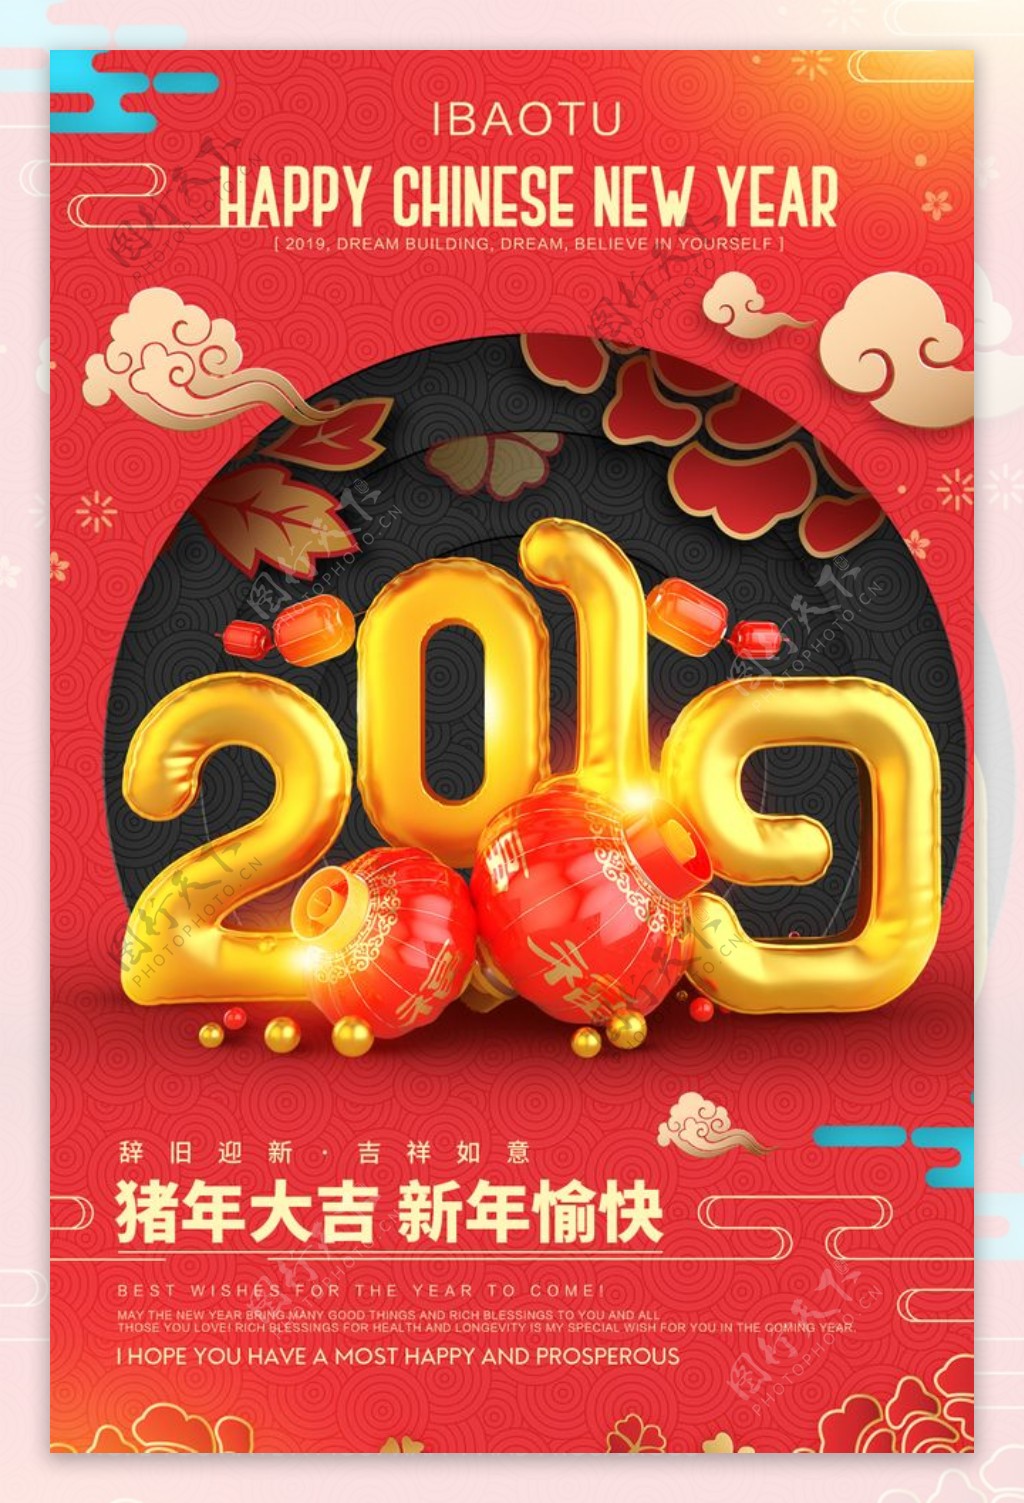 2019年新年快乐促销海报